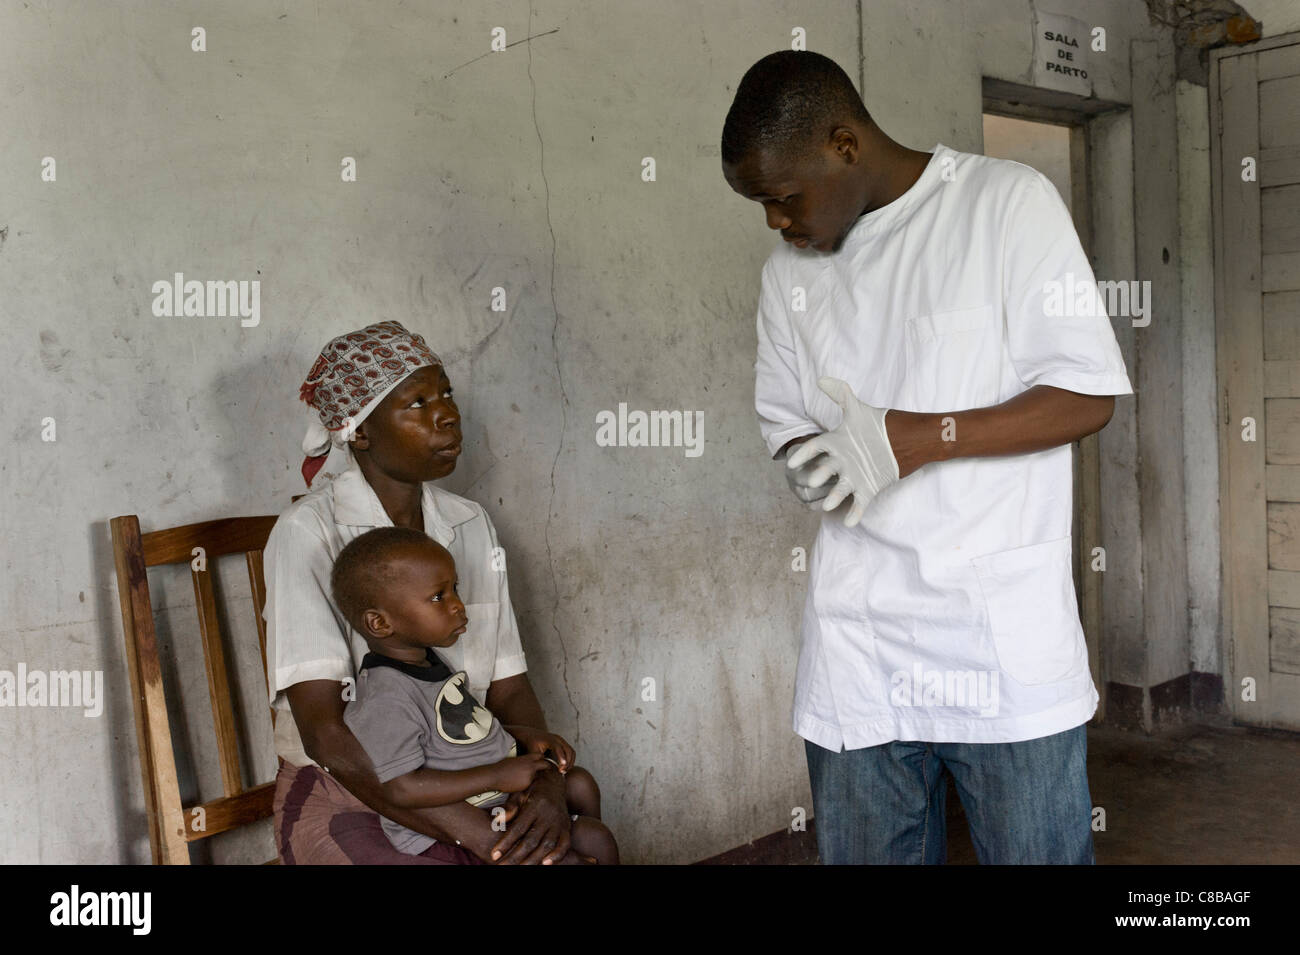 Dépistage rapide du VIH d'un enfant dont la mère est positive au VIH/SIDA dans la région de Quelimane Mozambique Banque D'Images